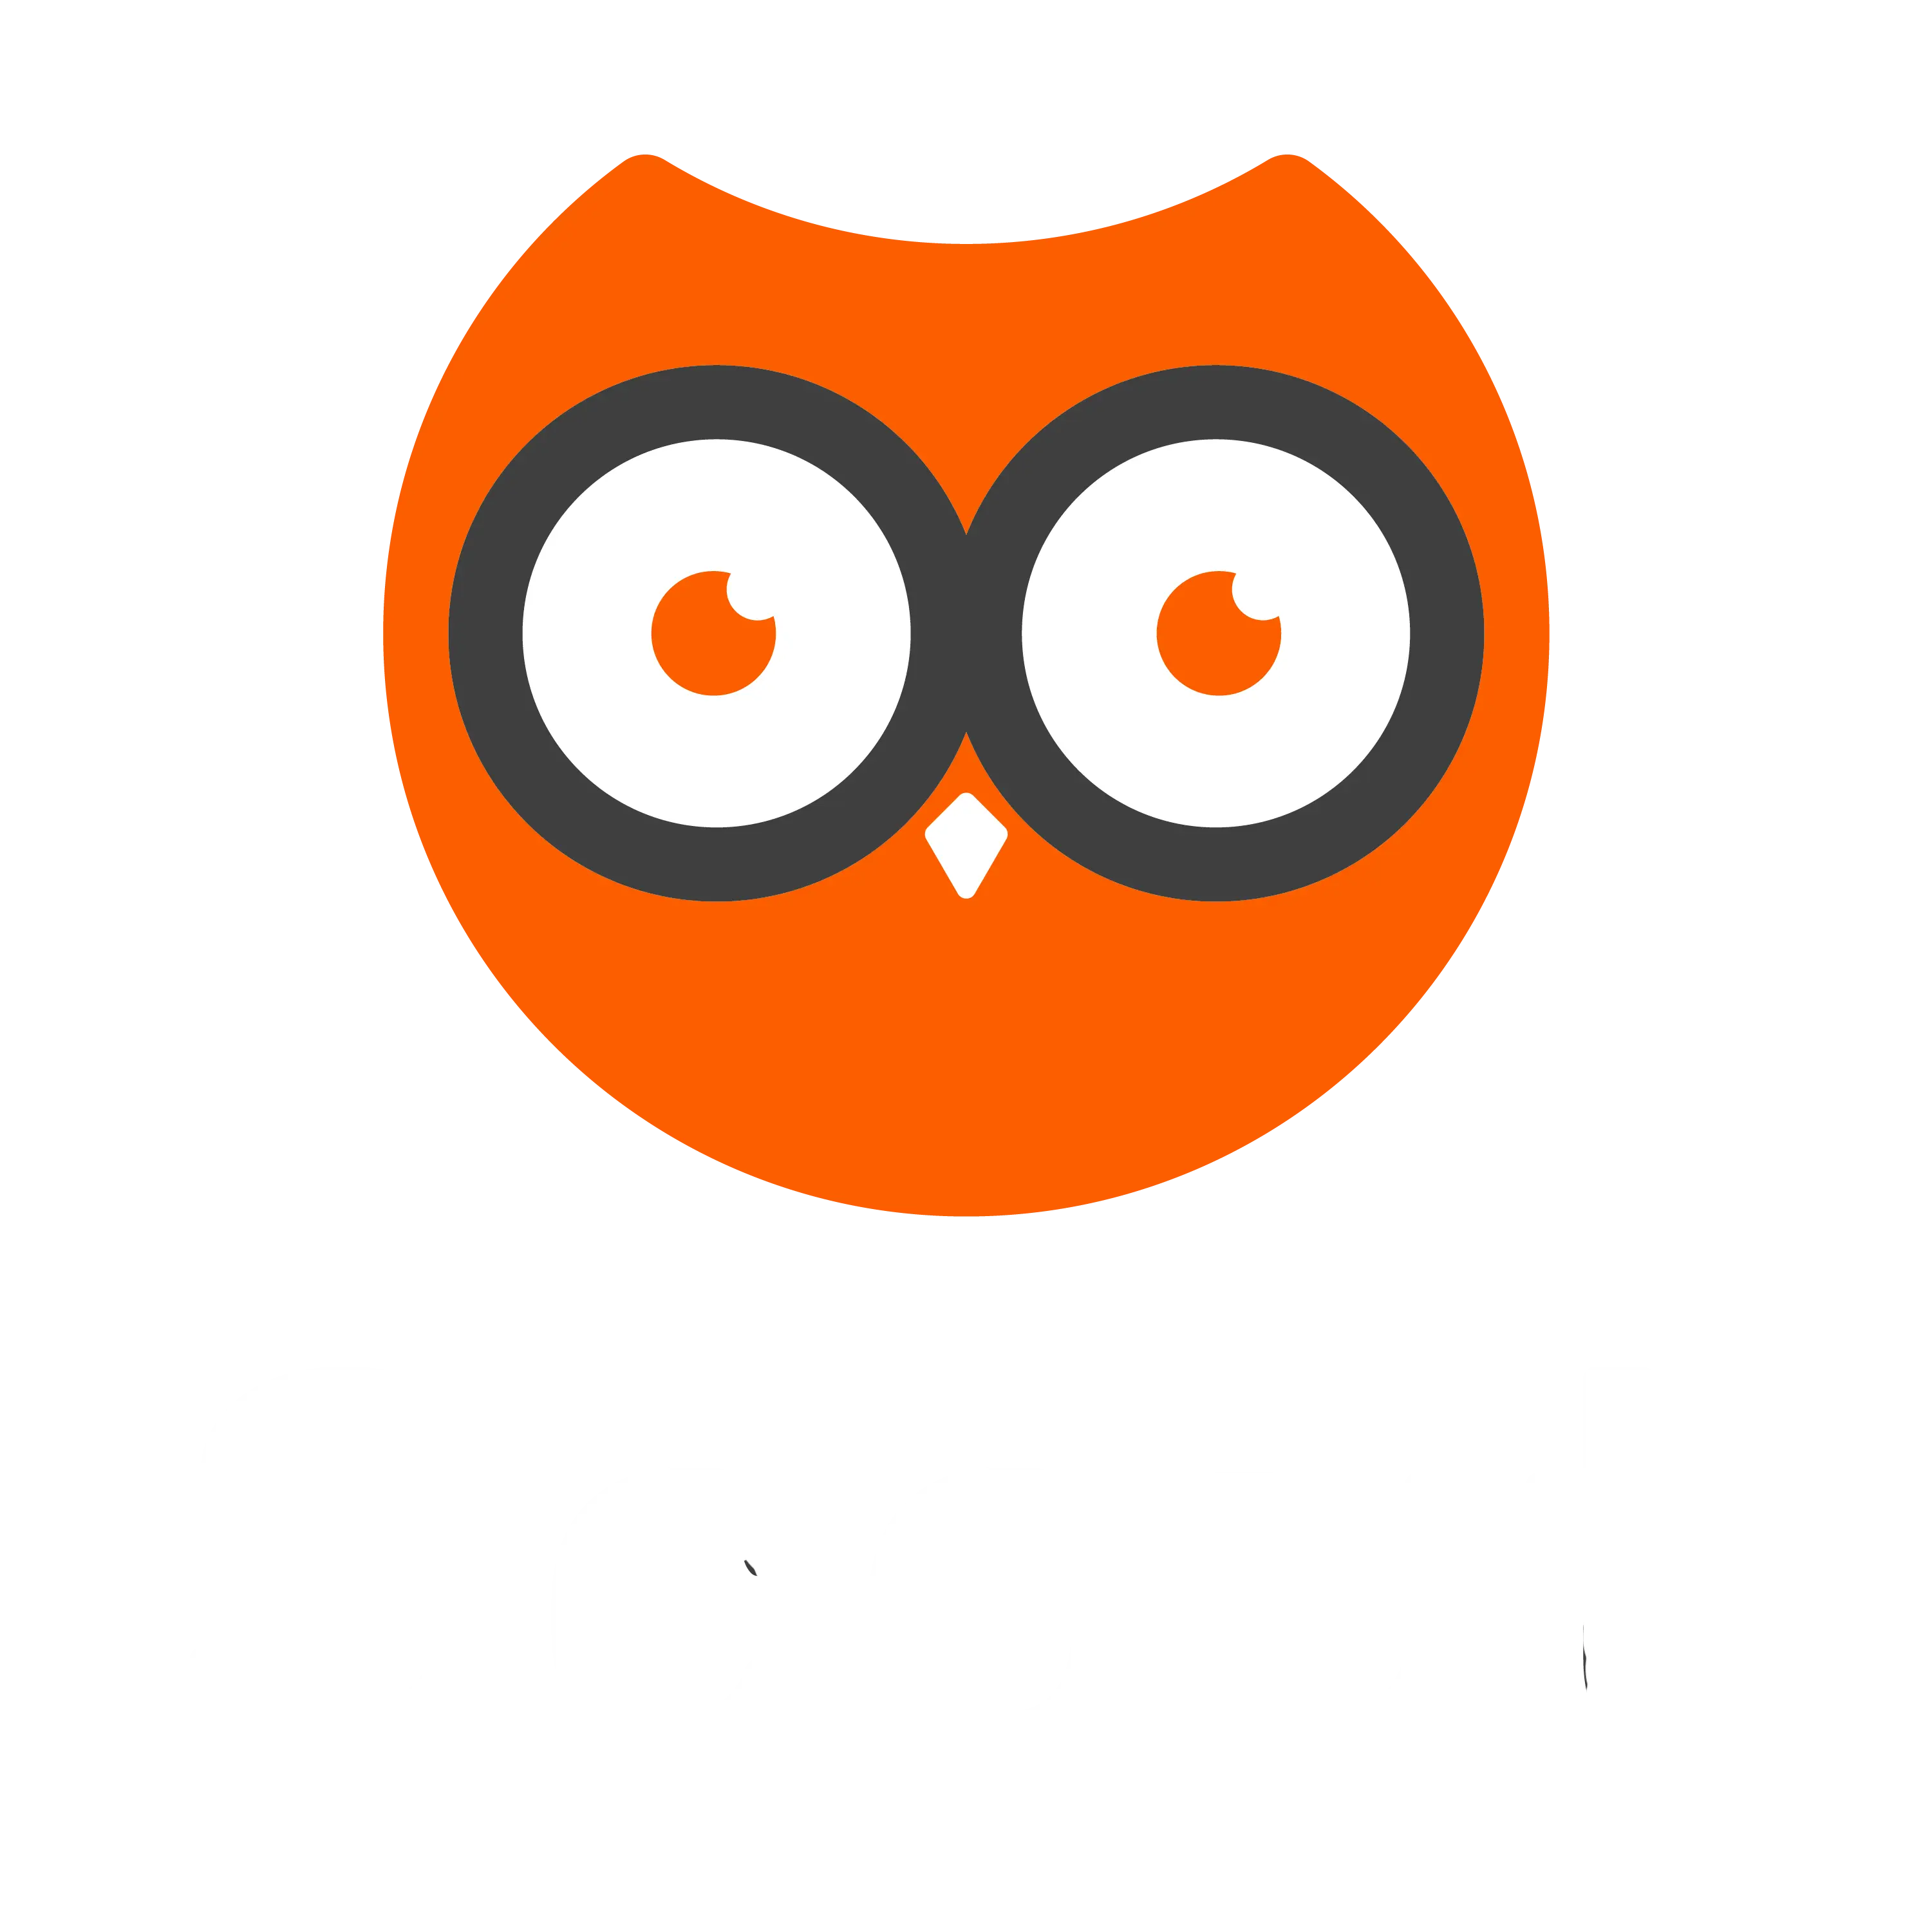 Orange Logo and White Text